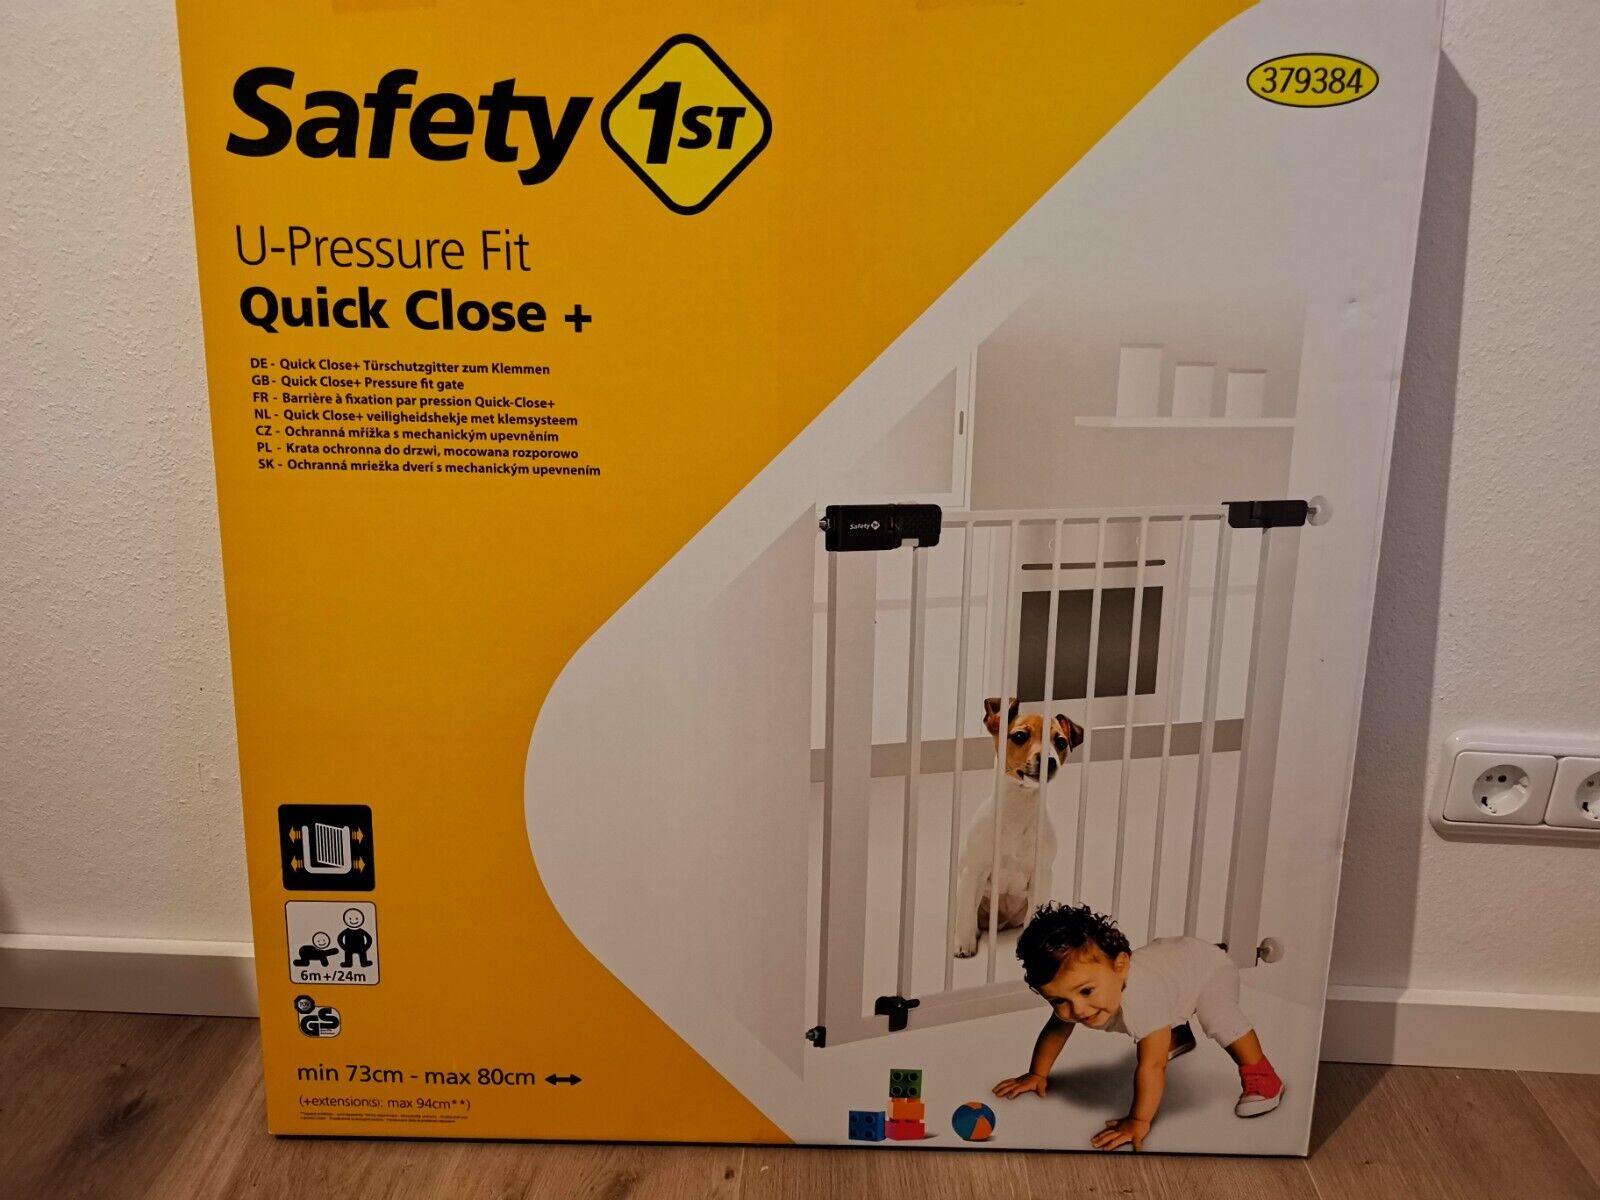 Safety 1st Quick Close Plus Türschutzgitter (24204314) online kaufen | eBay